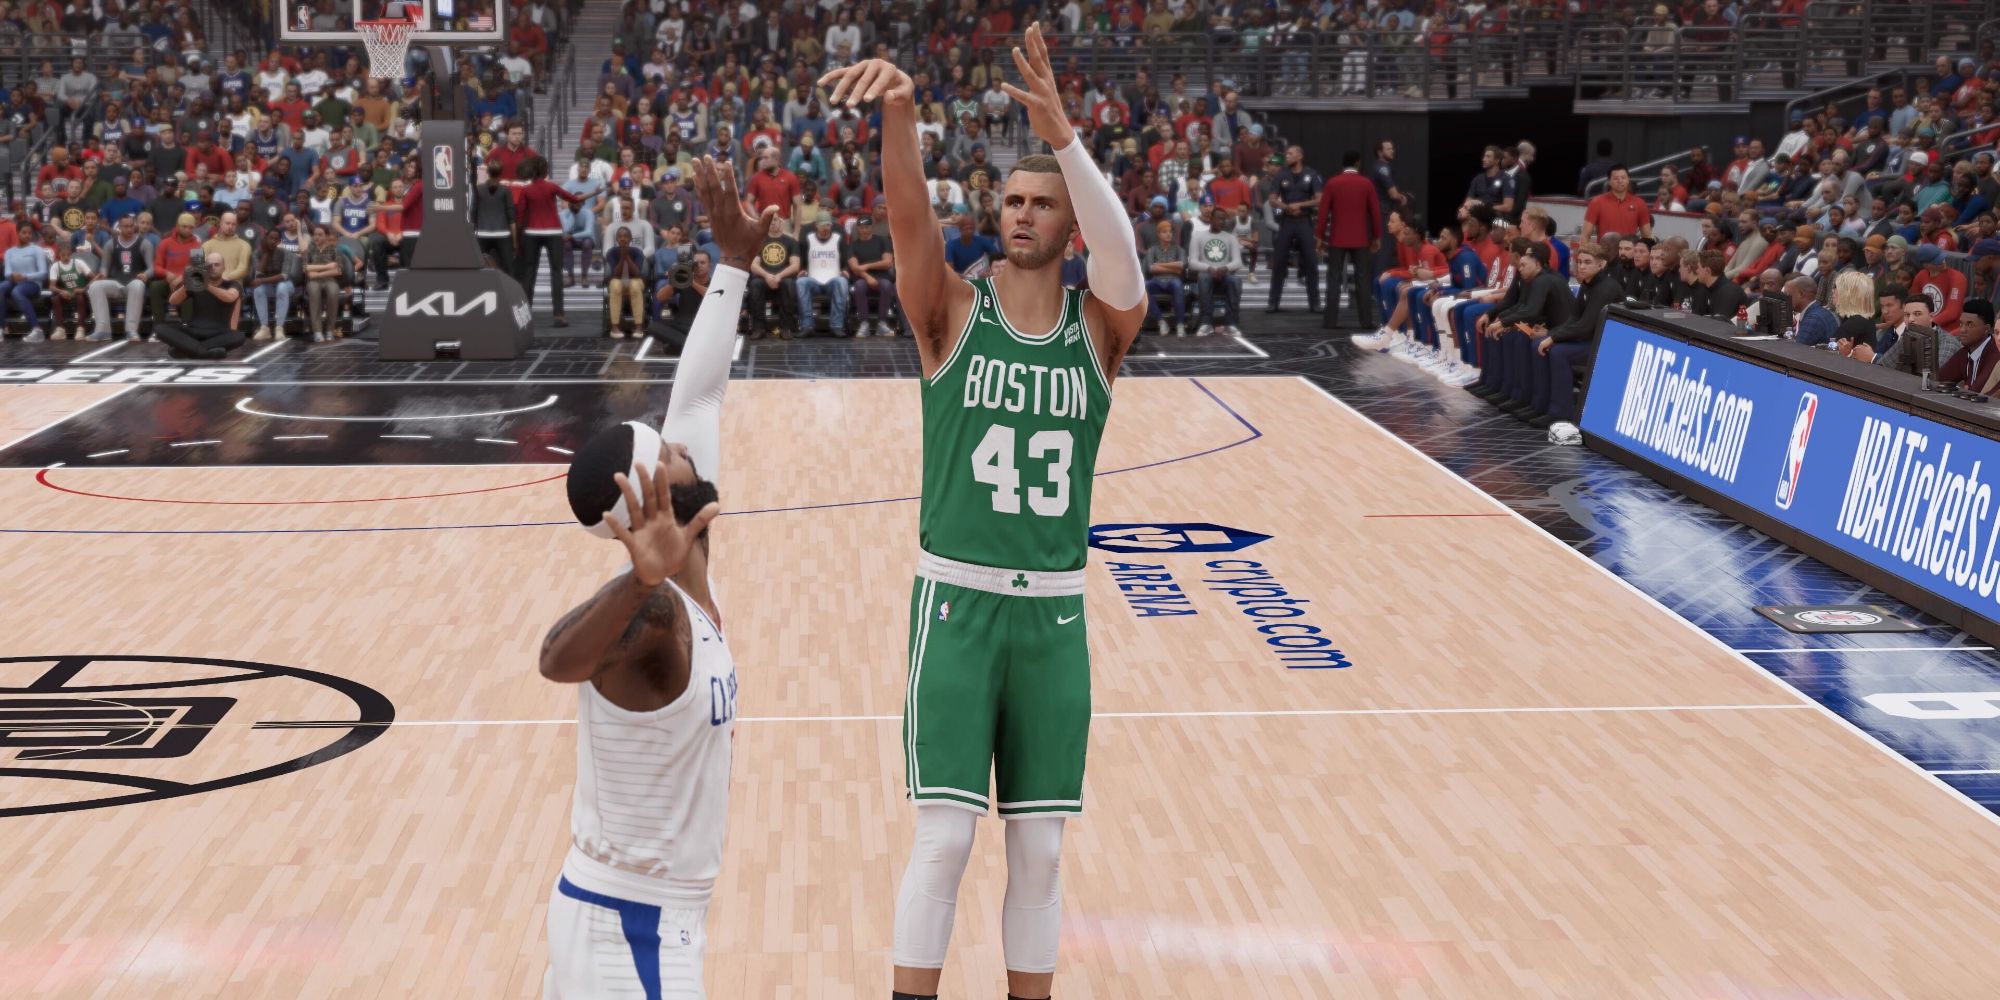 Kristaps Porzingis wearing Boston Celtics colors as he attempts a 3-point shot